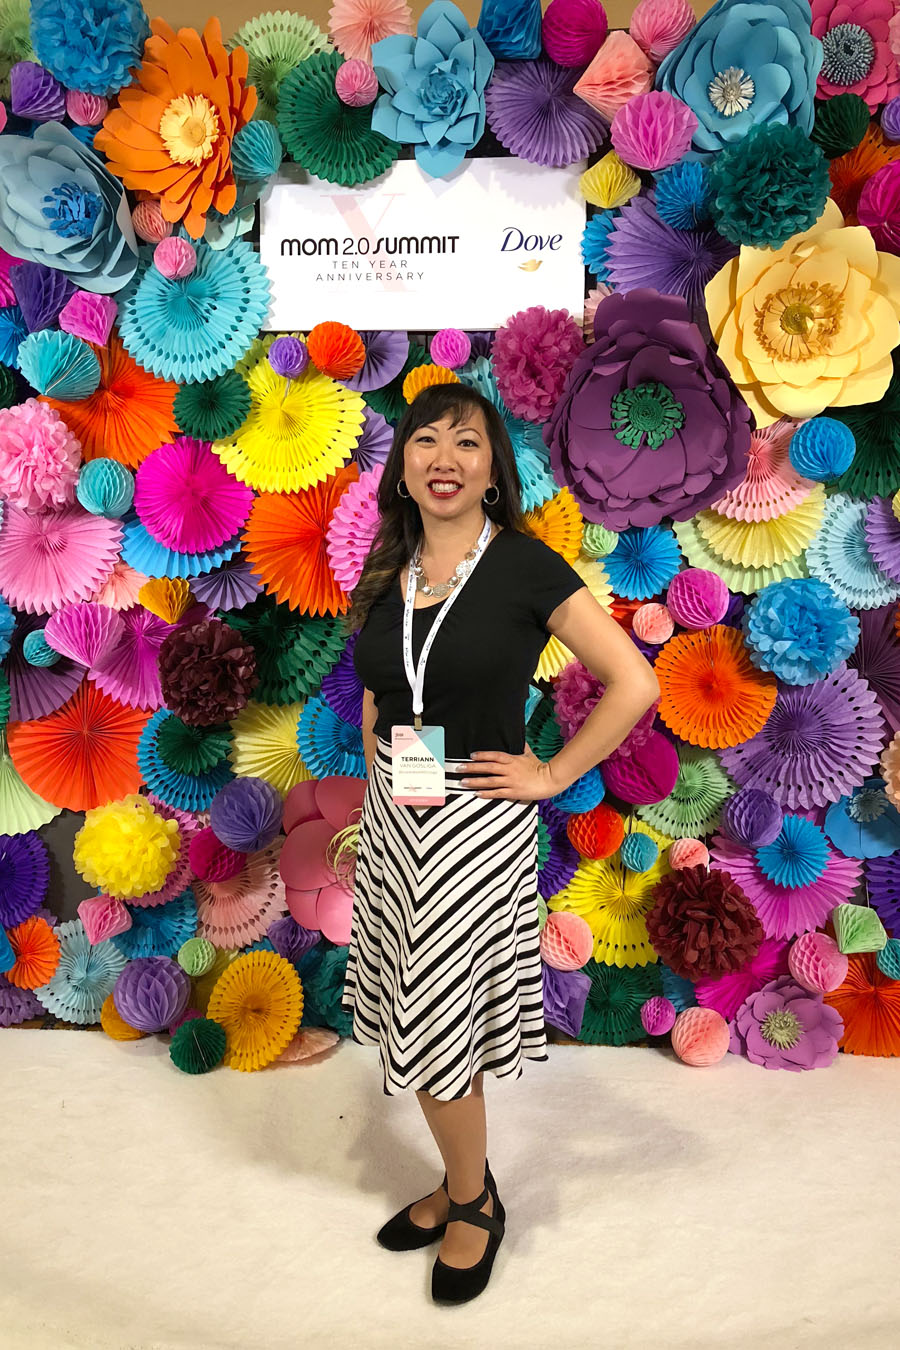 2018 Mom 2.0 Summit Blogging Conference April 2-4, 2018 in Pasadena, CA.